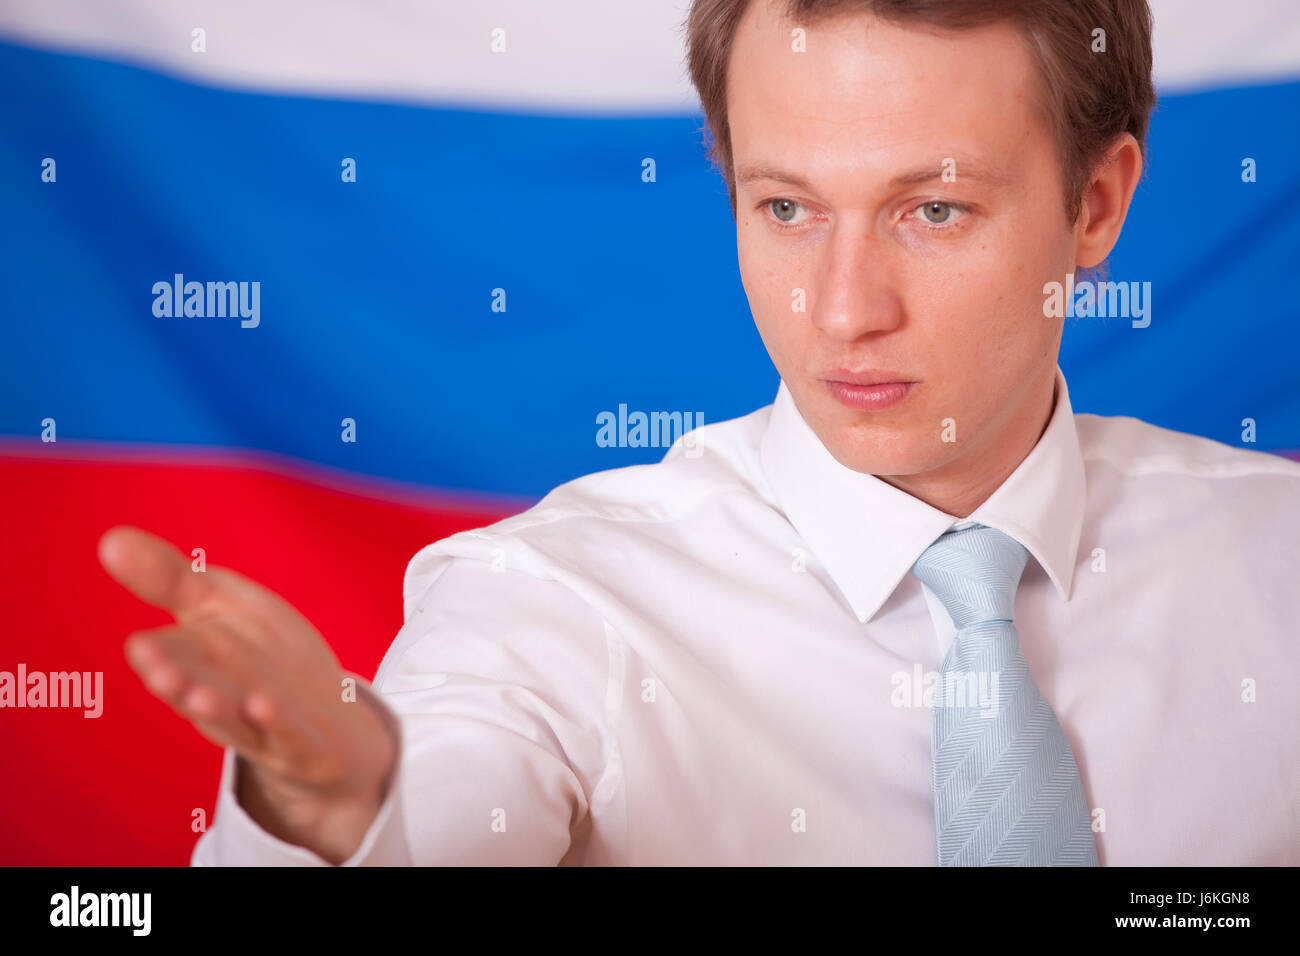 Politik Russland Lautsprecher Diplomatie treffen Konferenz Mann Presse Geste hand Stockfoto